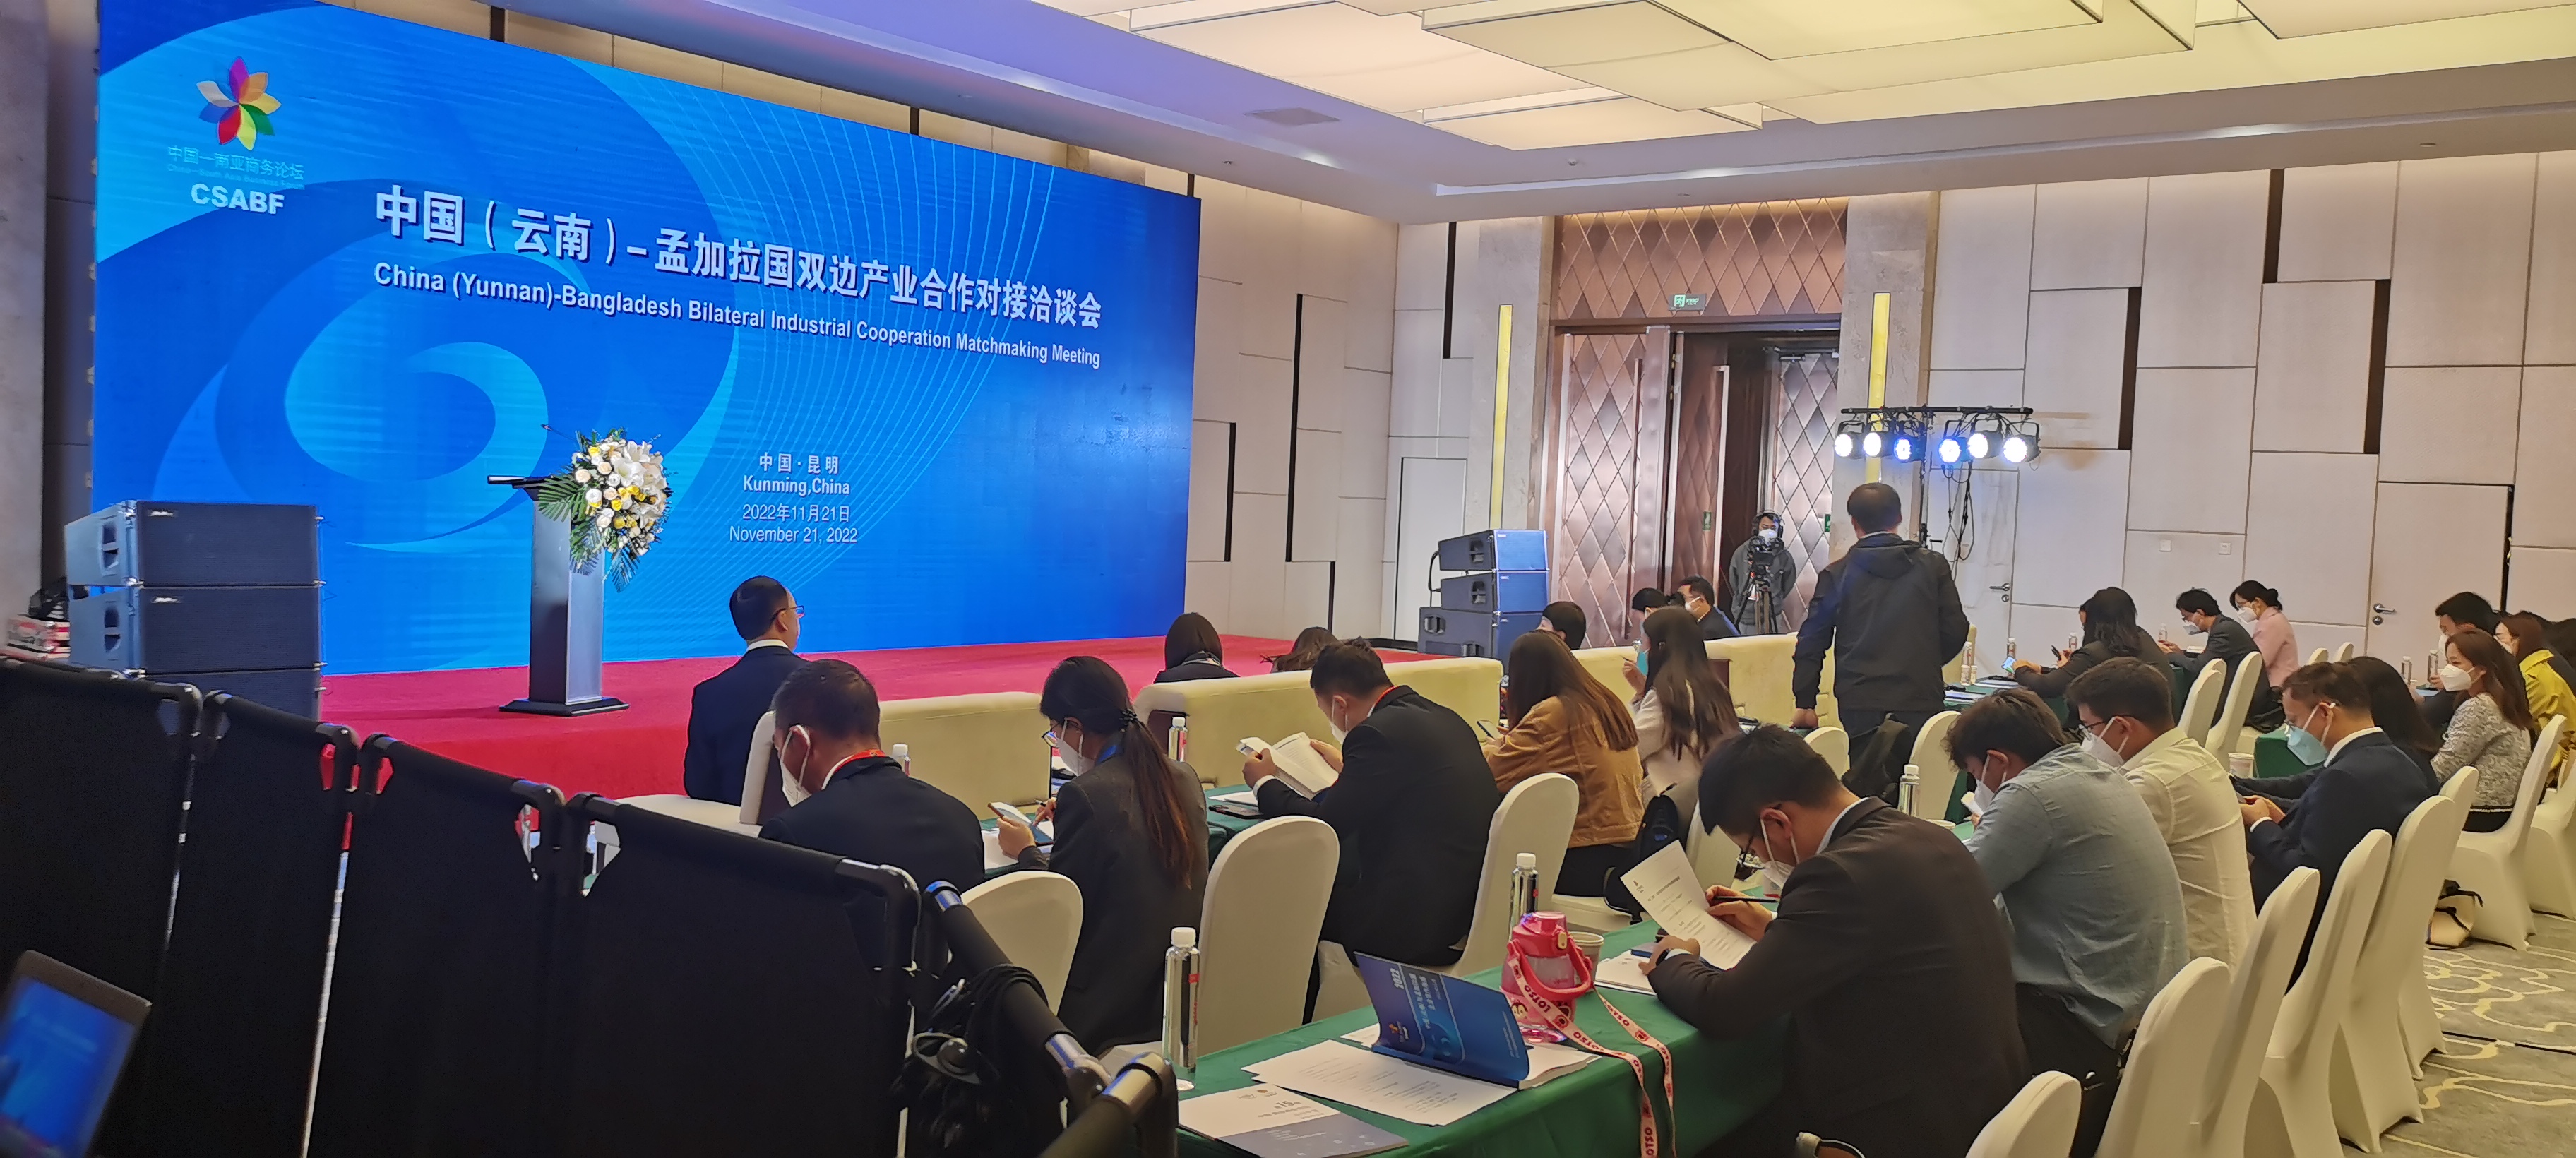 热烈祝贺第6届中国—南亚博览会成功举办